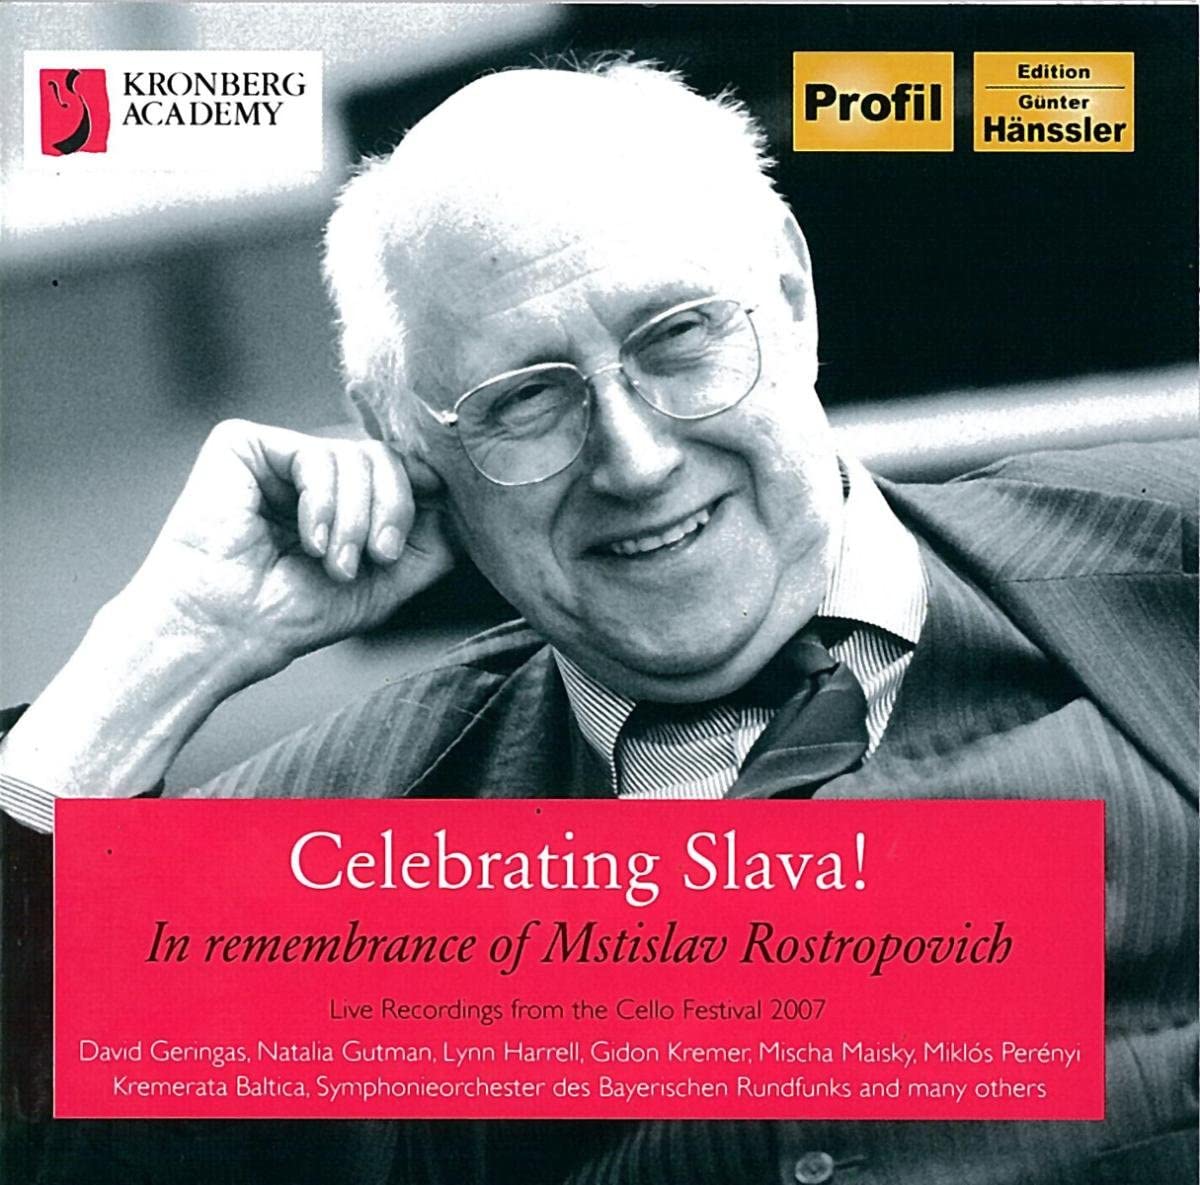 Celebrating Slava! - In Remenbrance of Mstislav Rostropovich